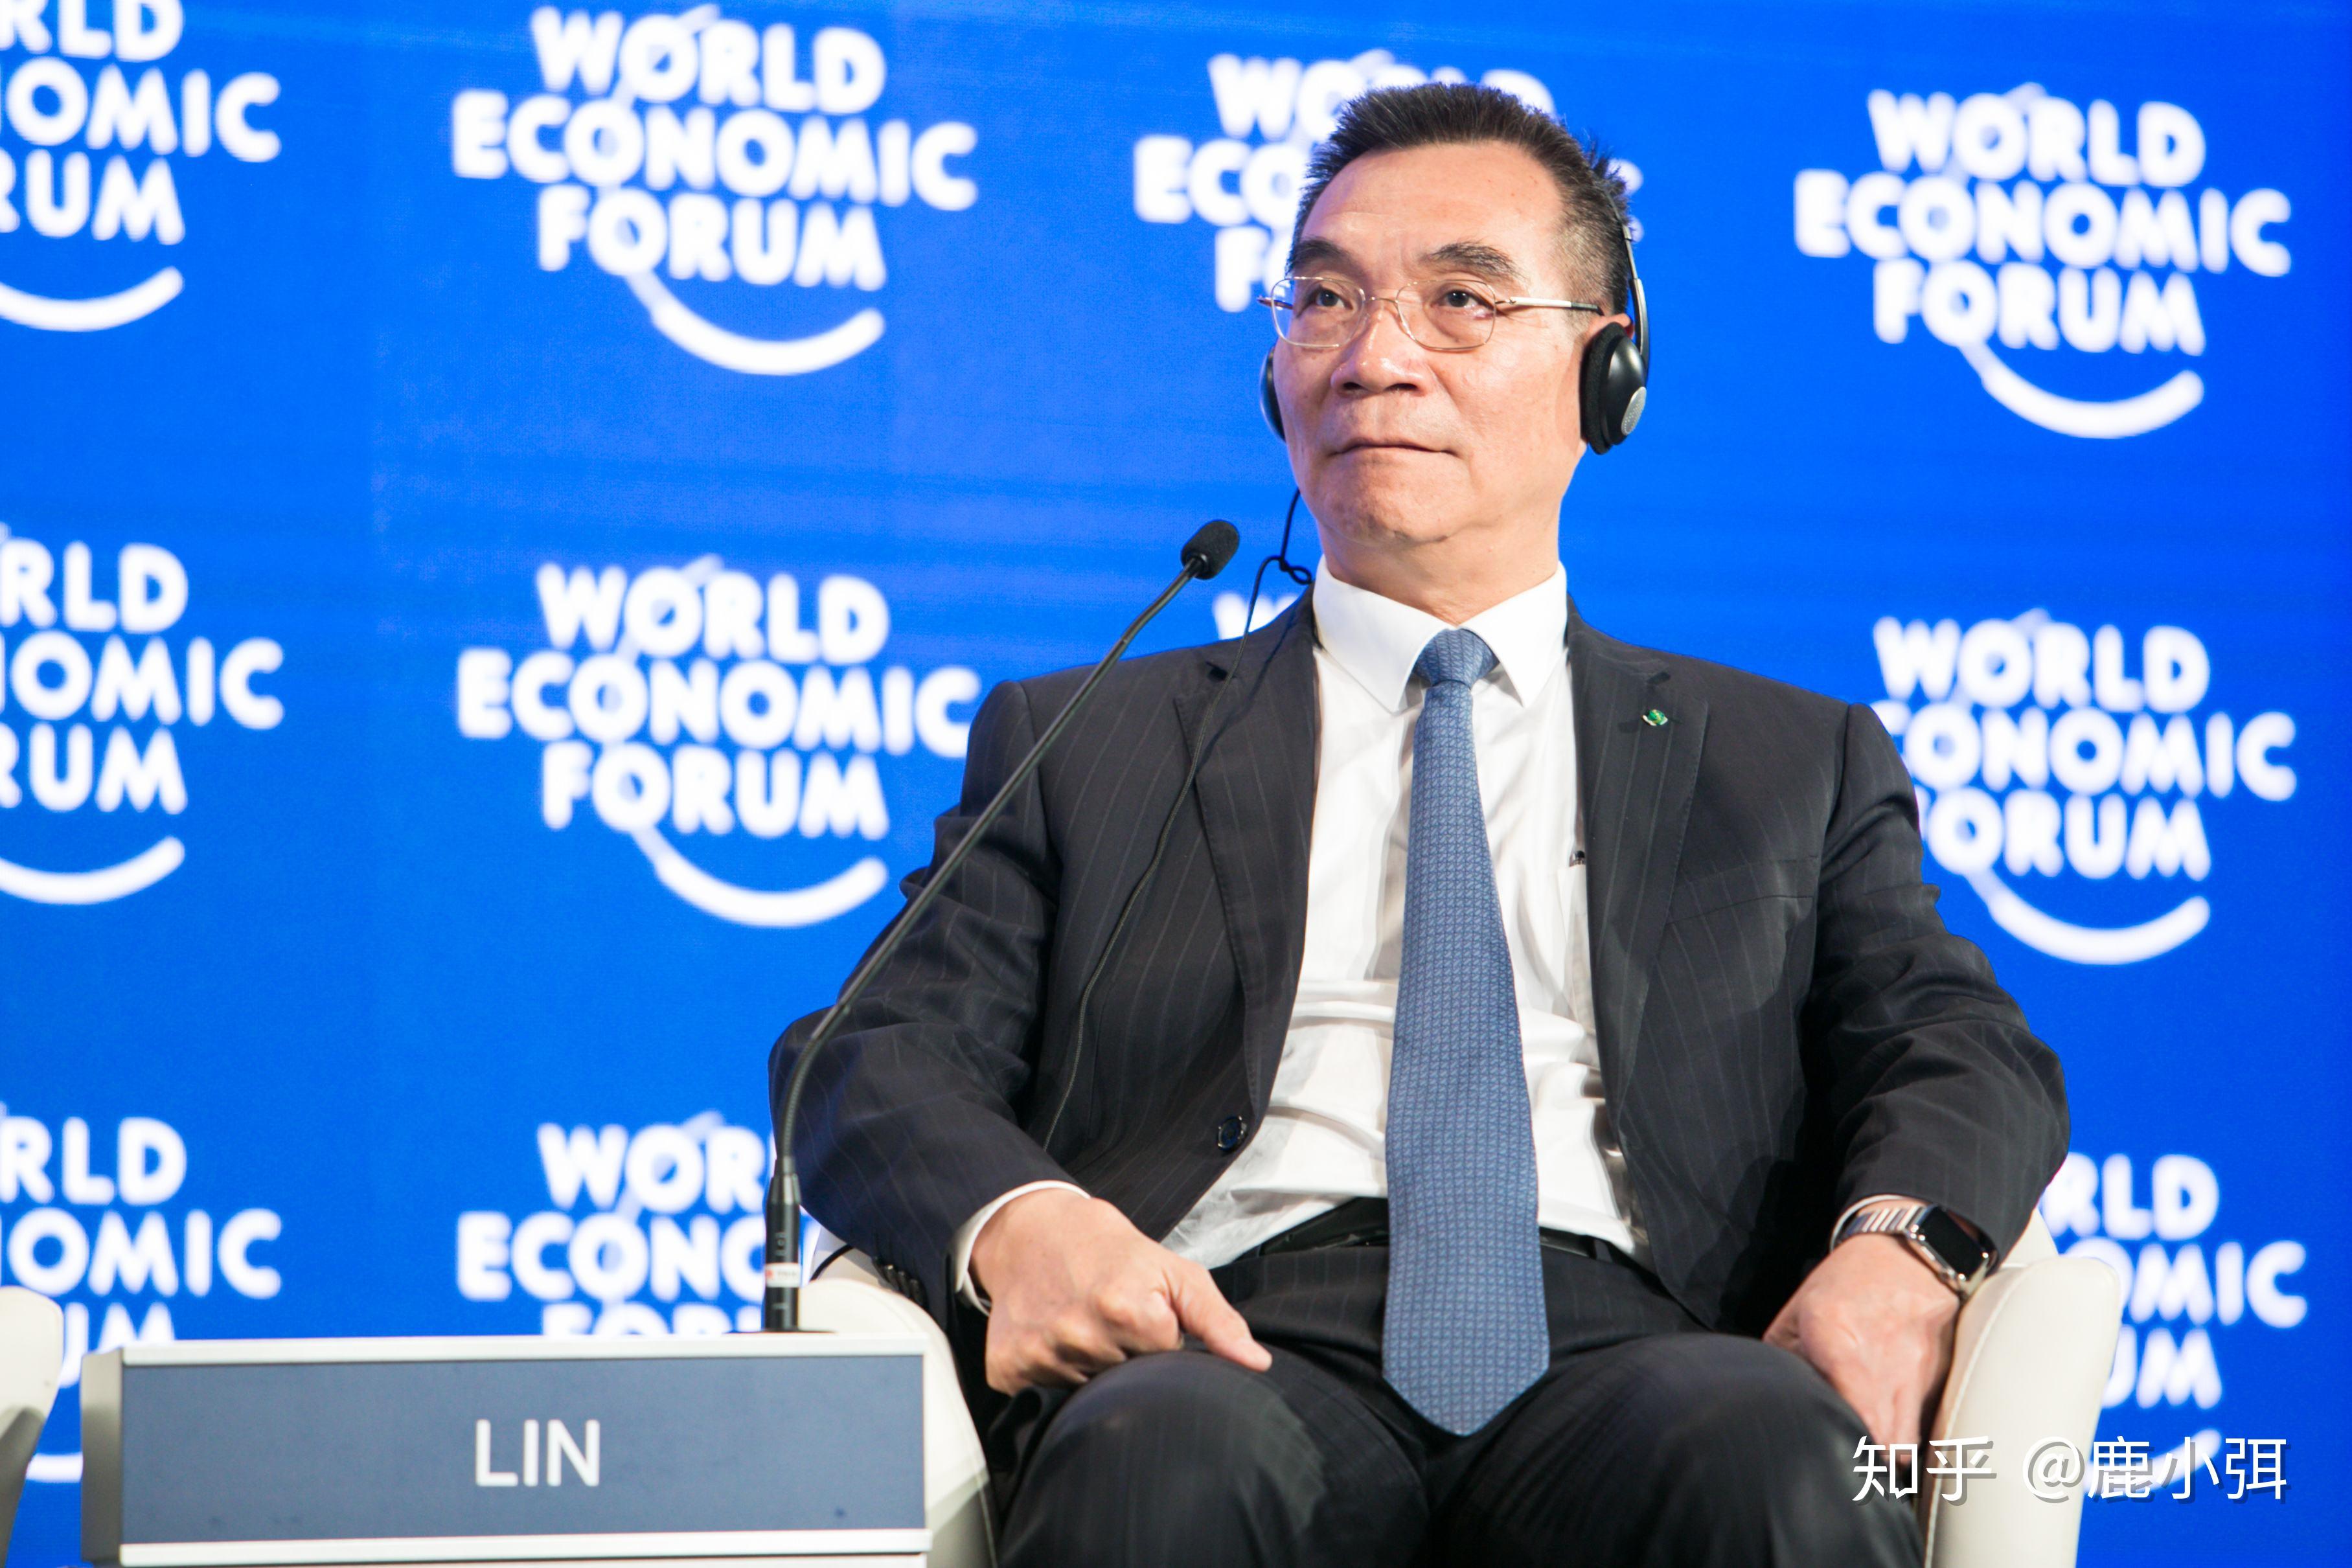 他,是首位来自中国的世界银行副行长